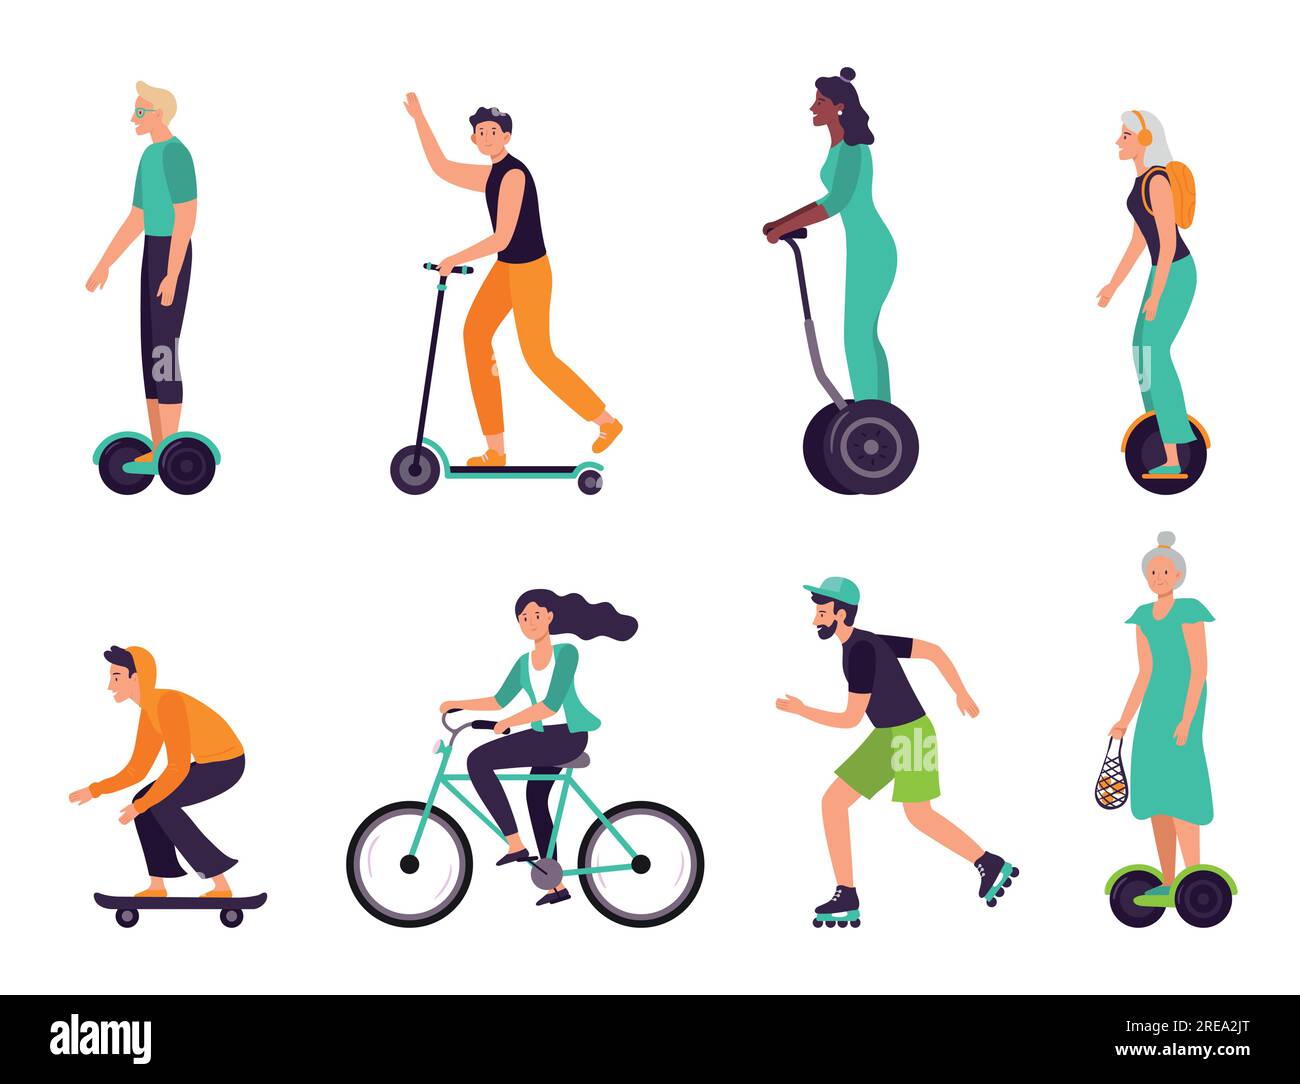 Aktive Menschen gesunder Lebensstil. Umweltfreundlicher Transport, Menschen unterschiedlichen Alters fahren moderne Fahrzeuge als Roller Stock Vektor